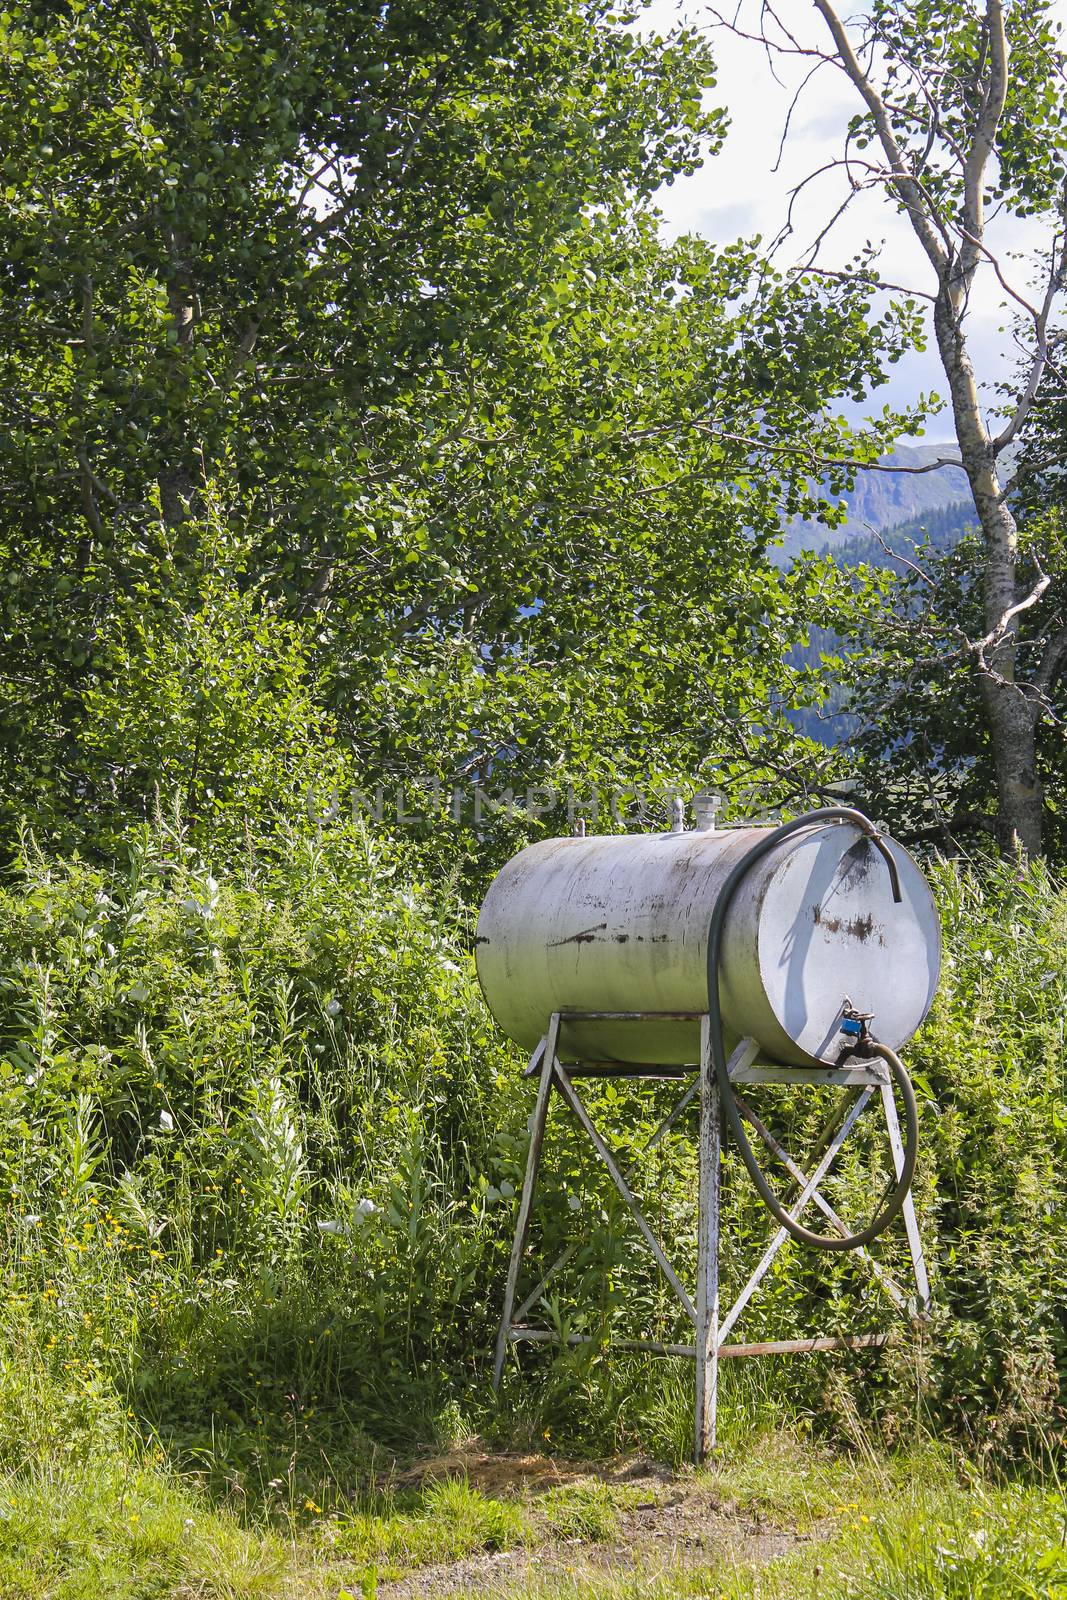 Petrol tank or water dispenser in the meadow in Norway. by Arkadij